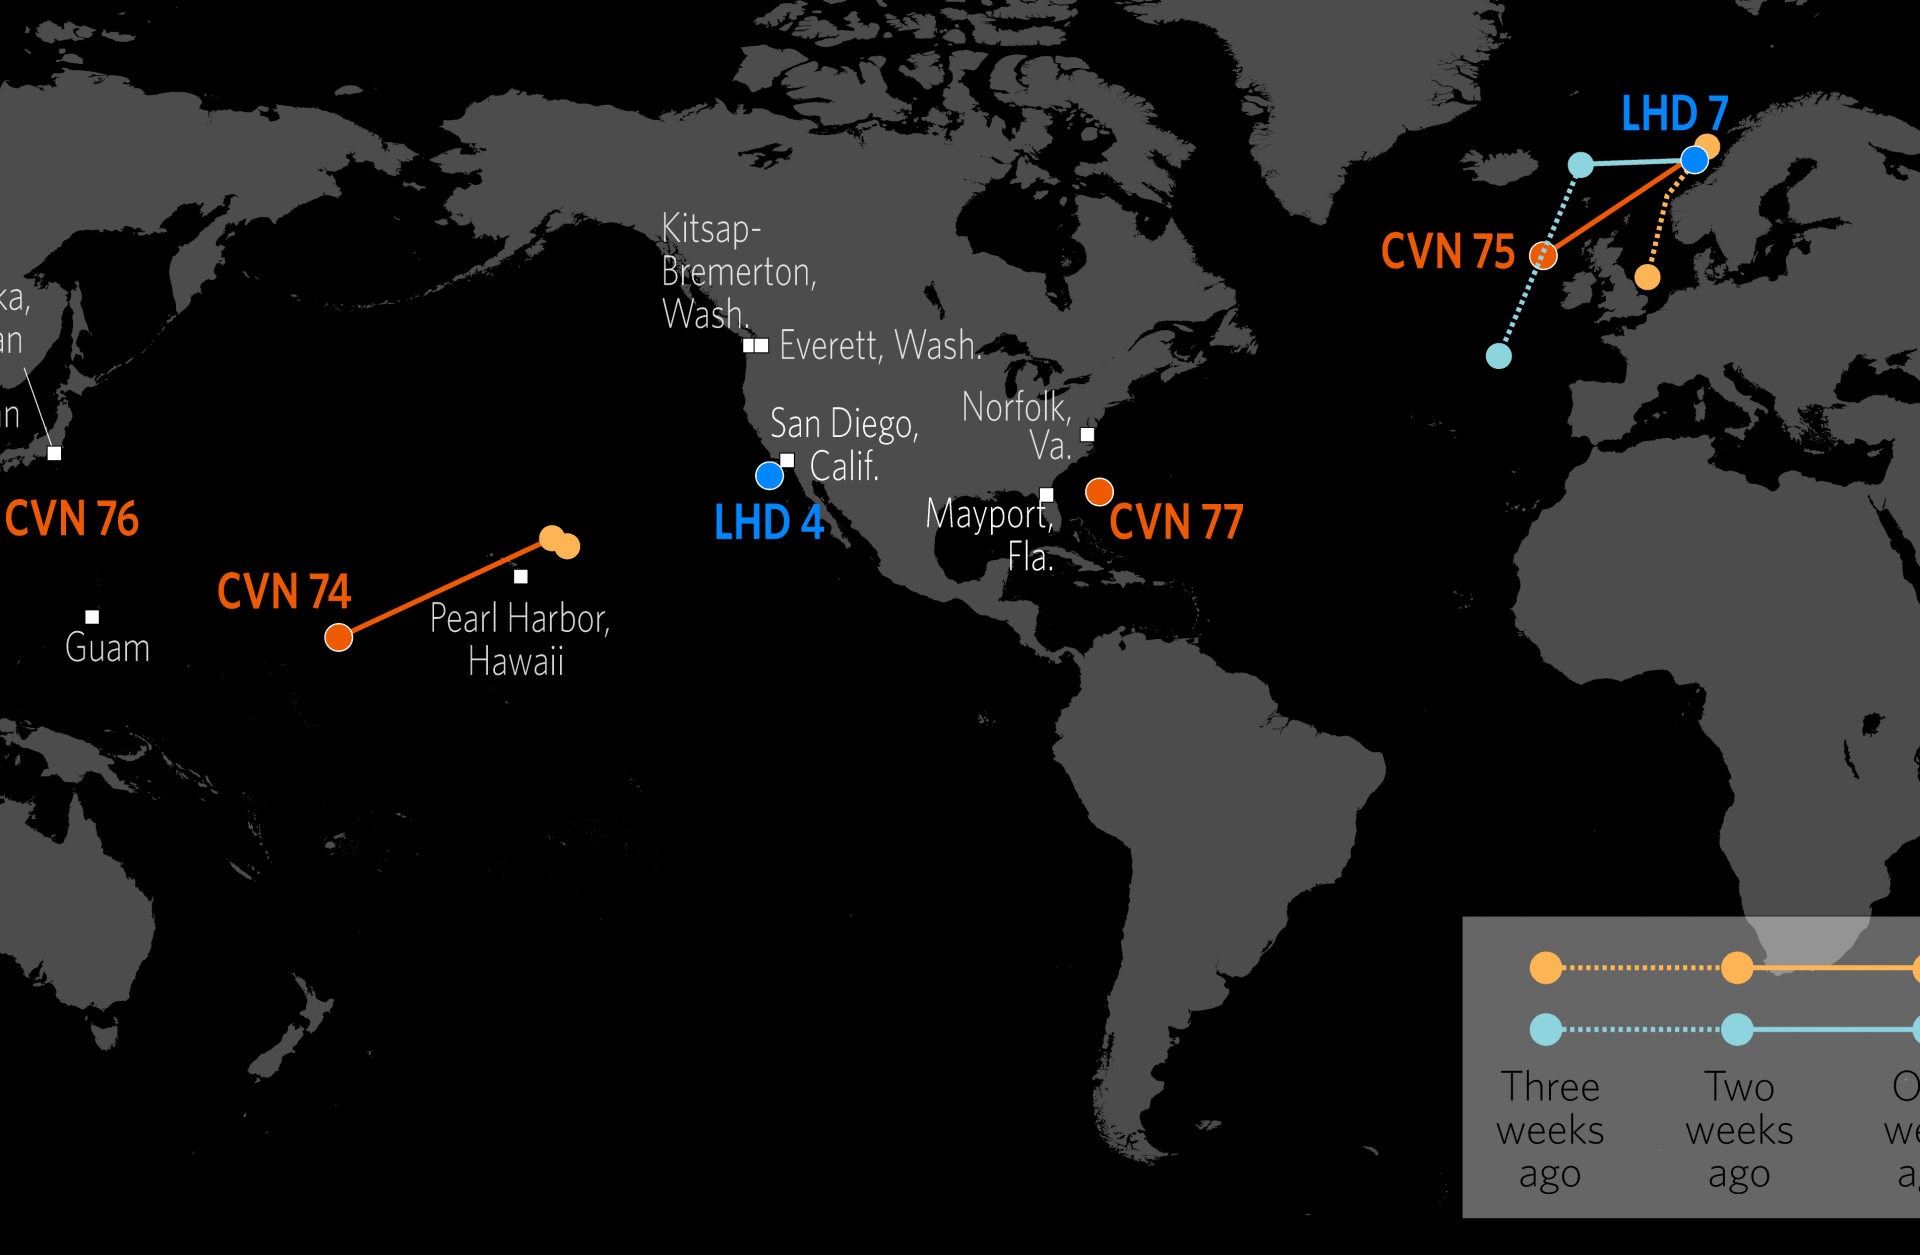 Naval Update Map: Nov. 8, 2018